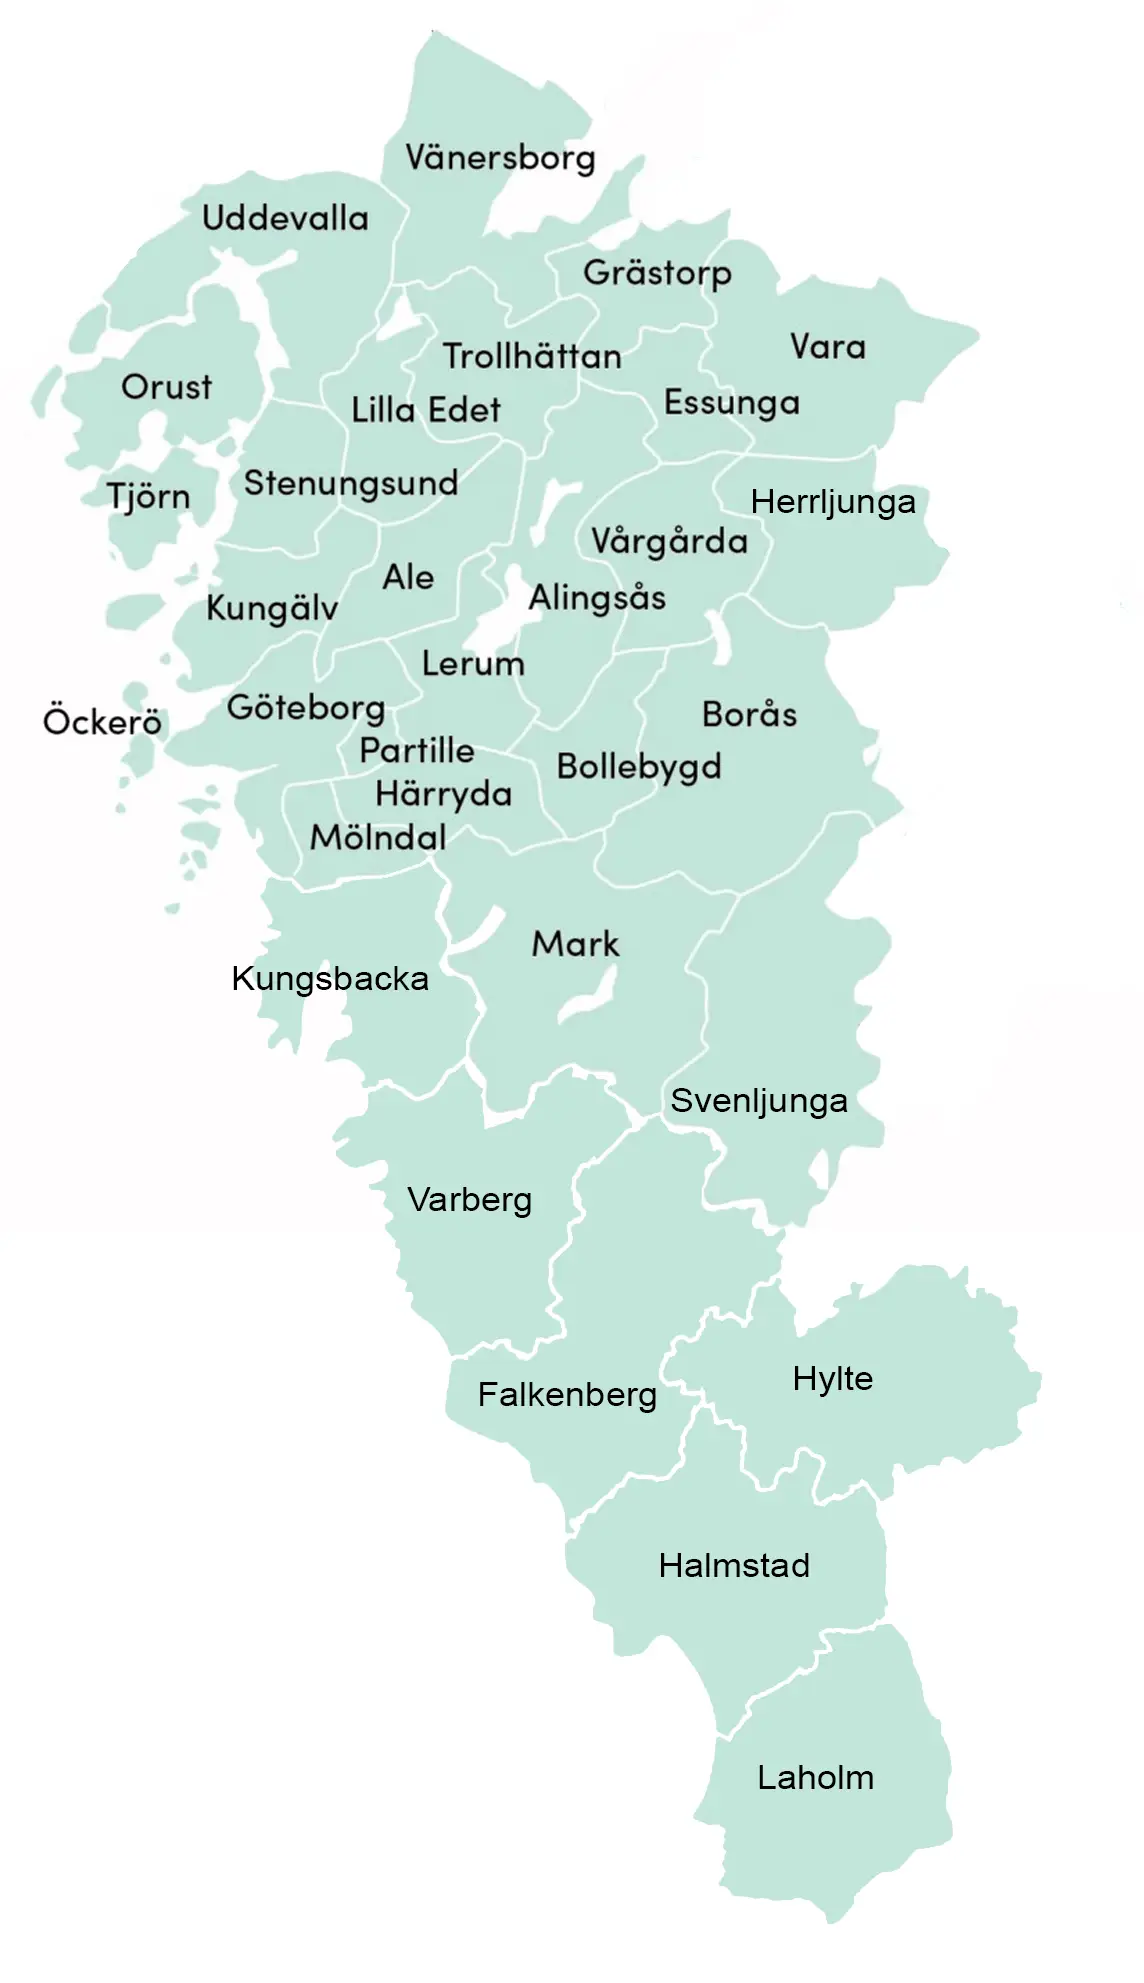 Låssmed, Elektriker, rörmokare i Göteborg, Kungsbacka, Alingsås, Kungälv, Falkenberg, Varberg, Halmstad